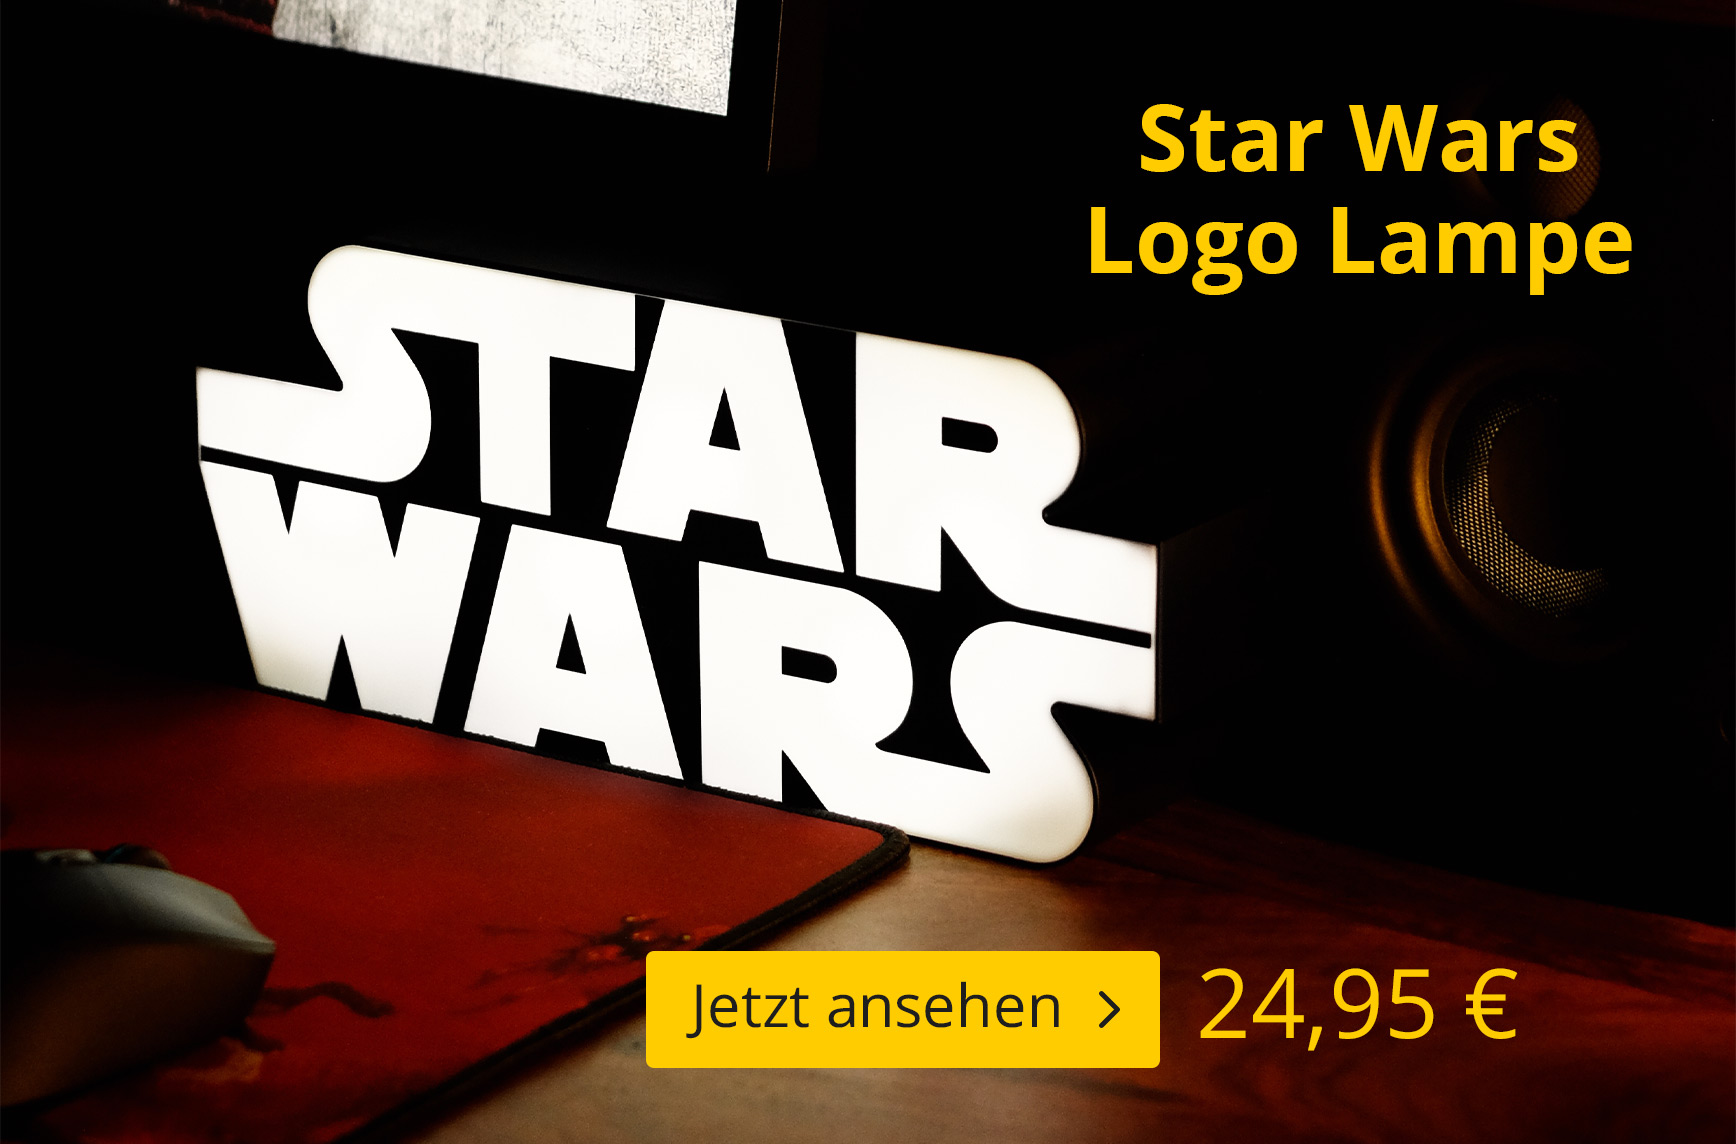 Star Wars Logo Lampe - 24,95 EUR